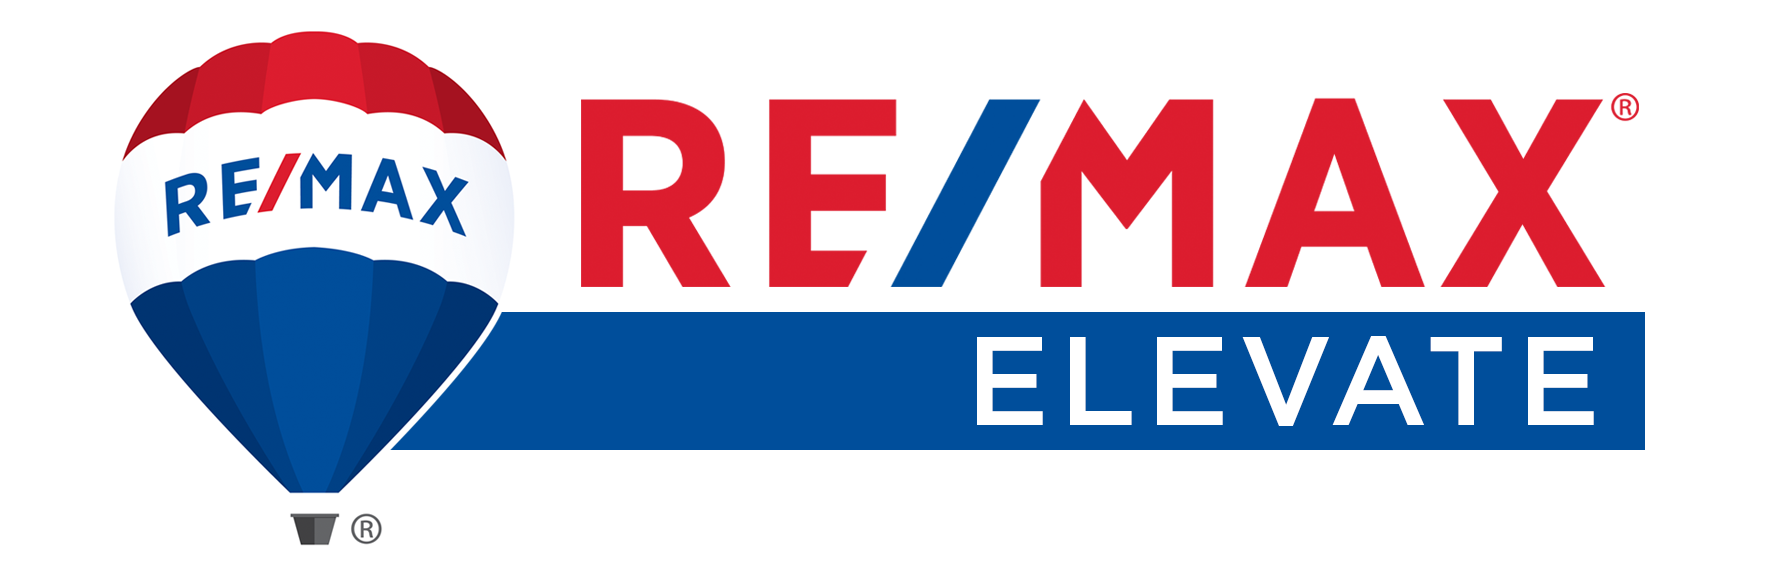 REMAX-Elevate-Balloon-Banner